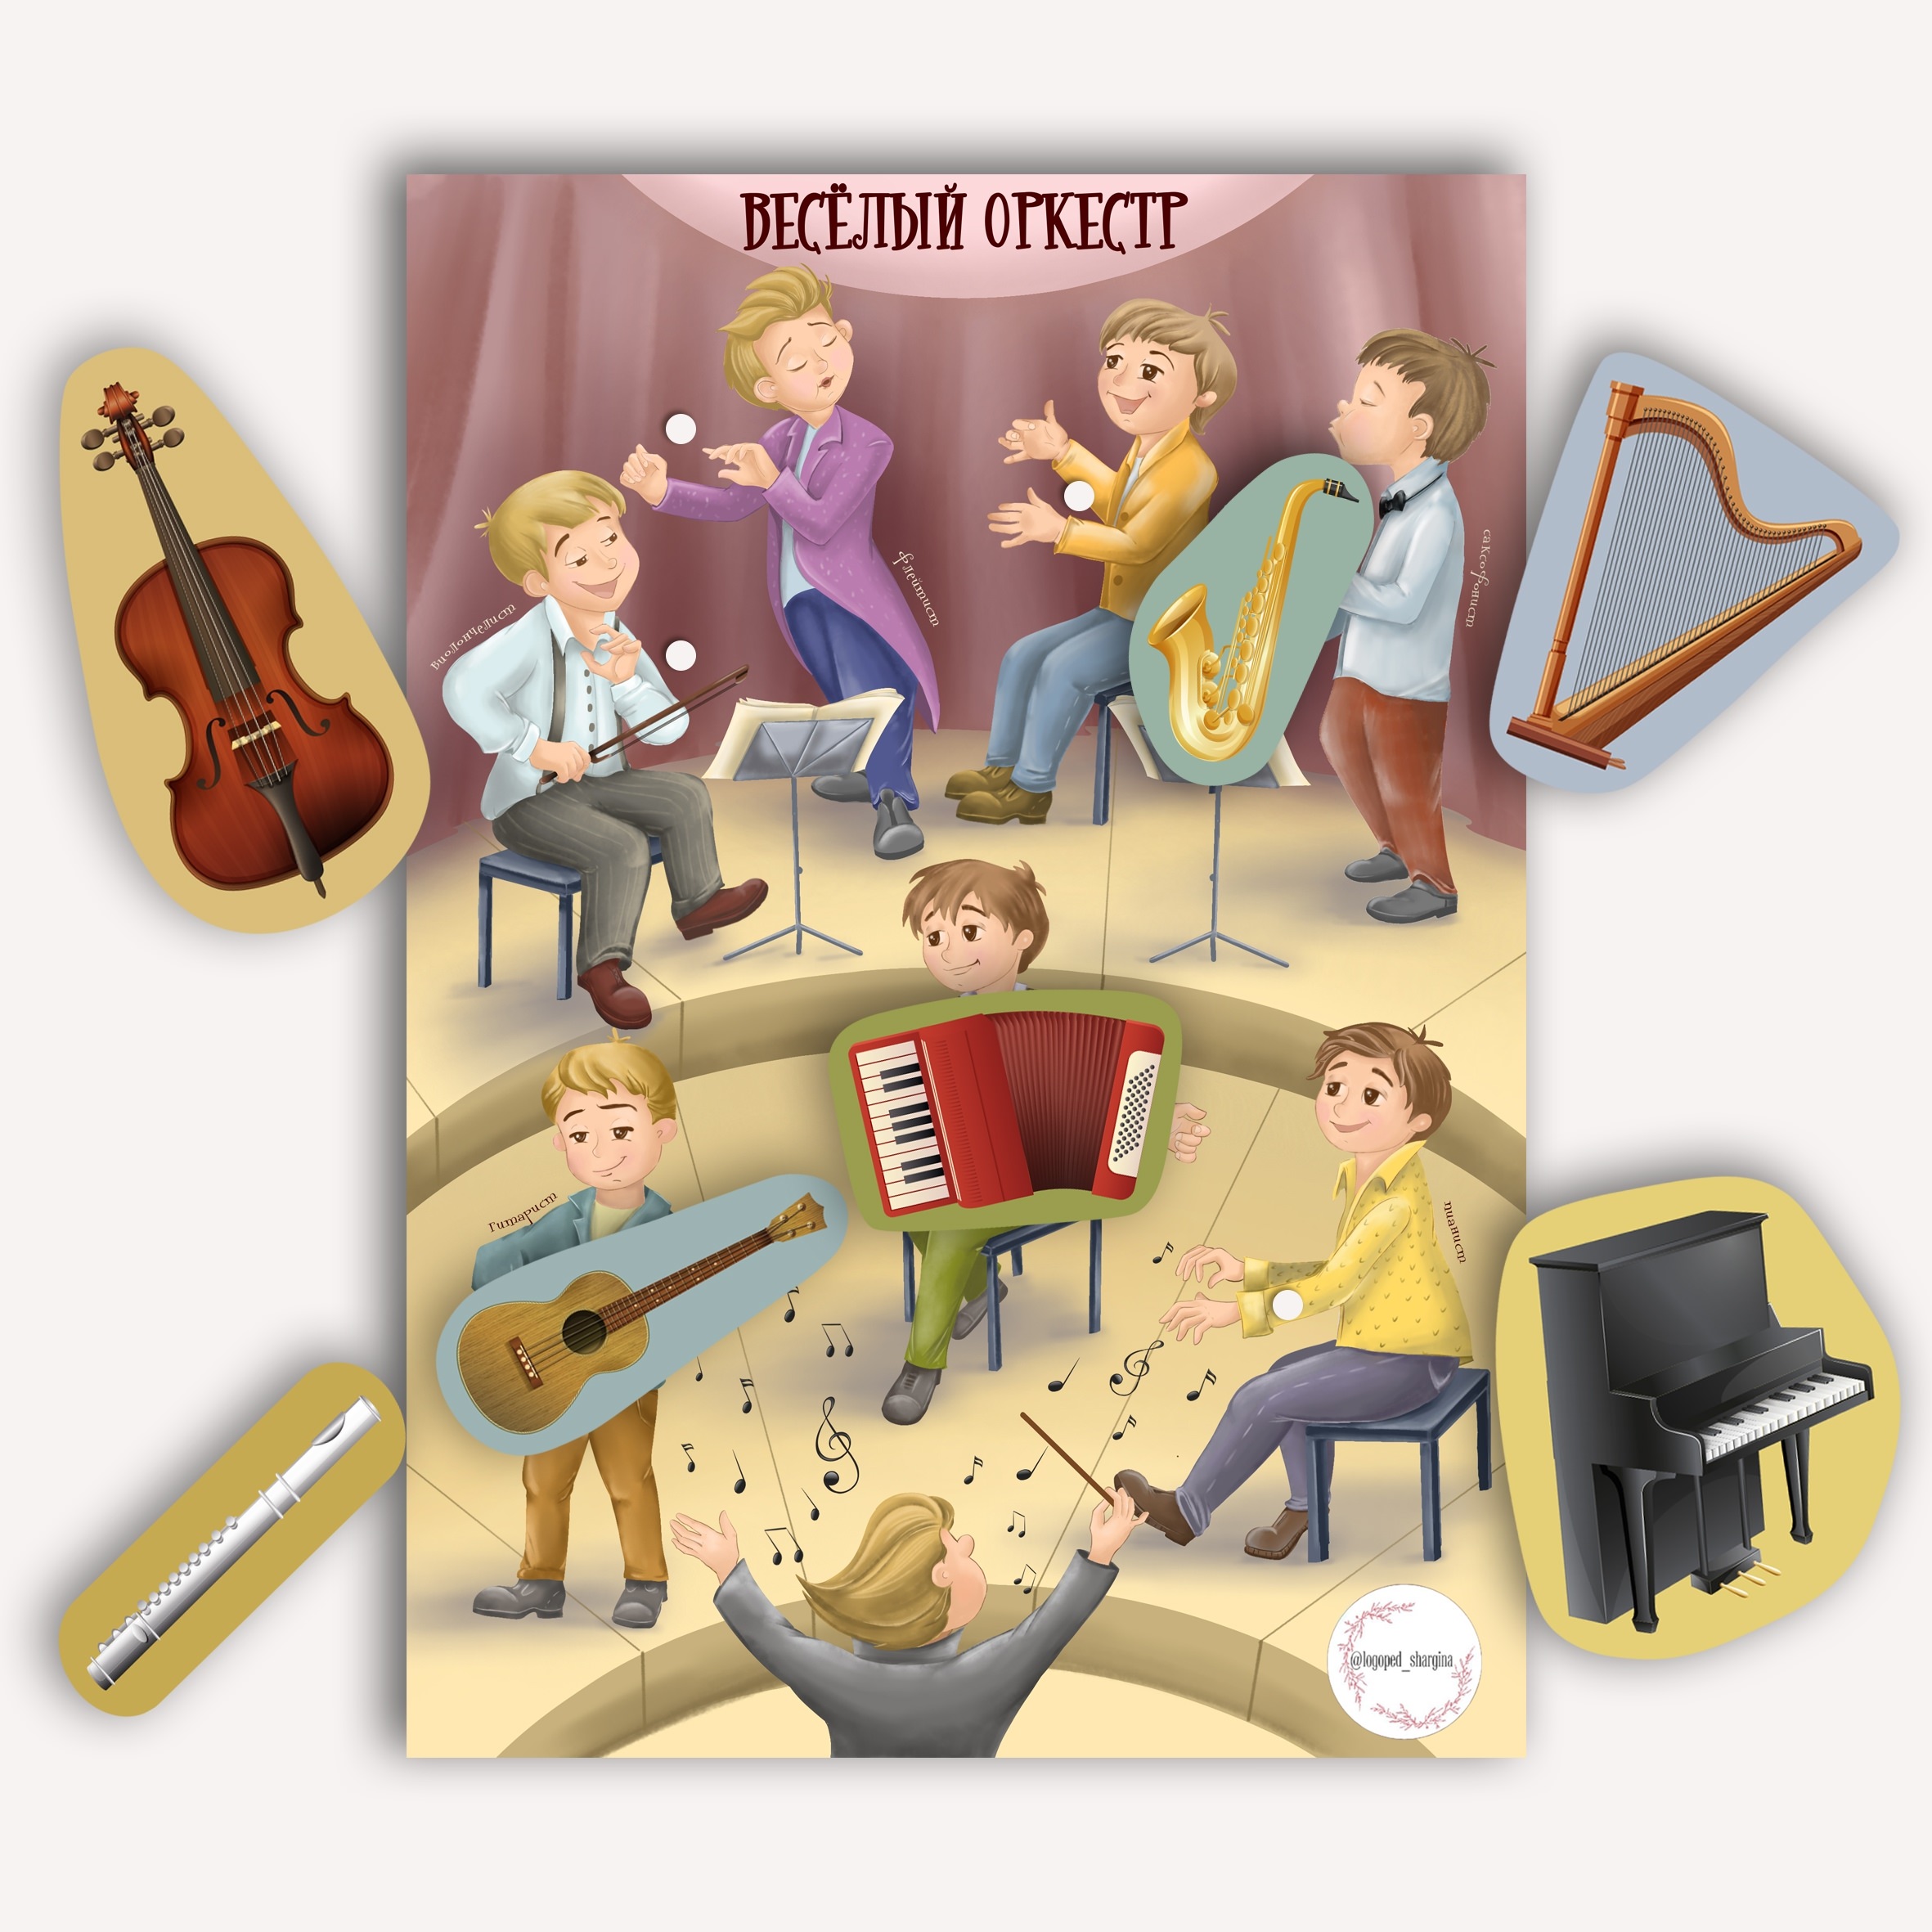 Веселый оркестр музыка. Оркестр для детей в детском саду. Оркестр картинка для детей. Веселый оркестр. Оркестр рисунок для детей.